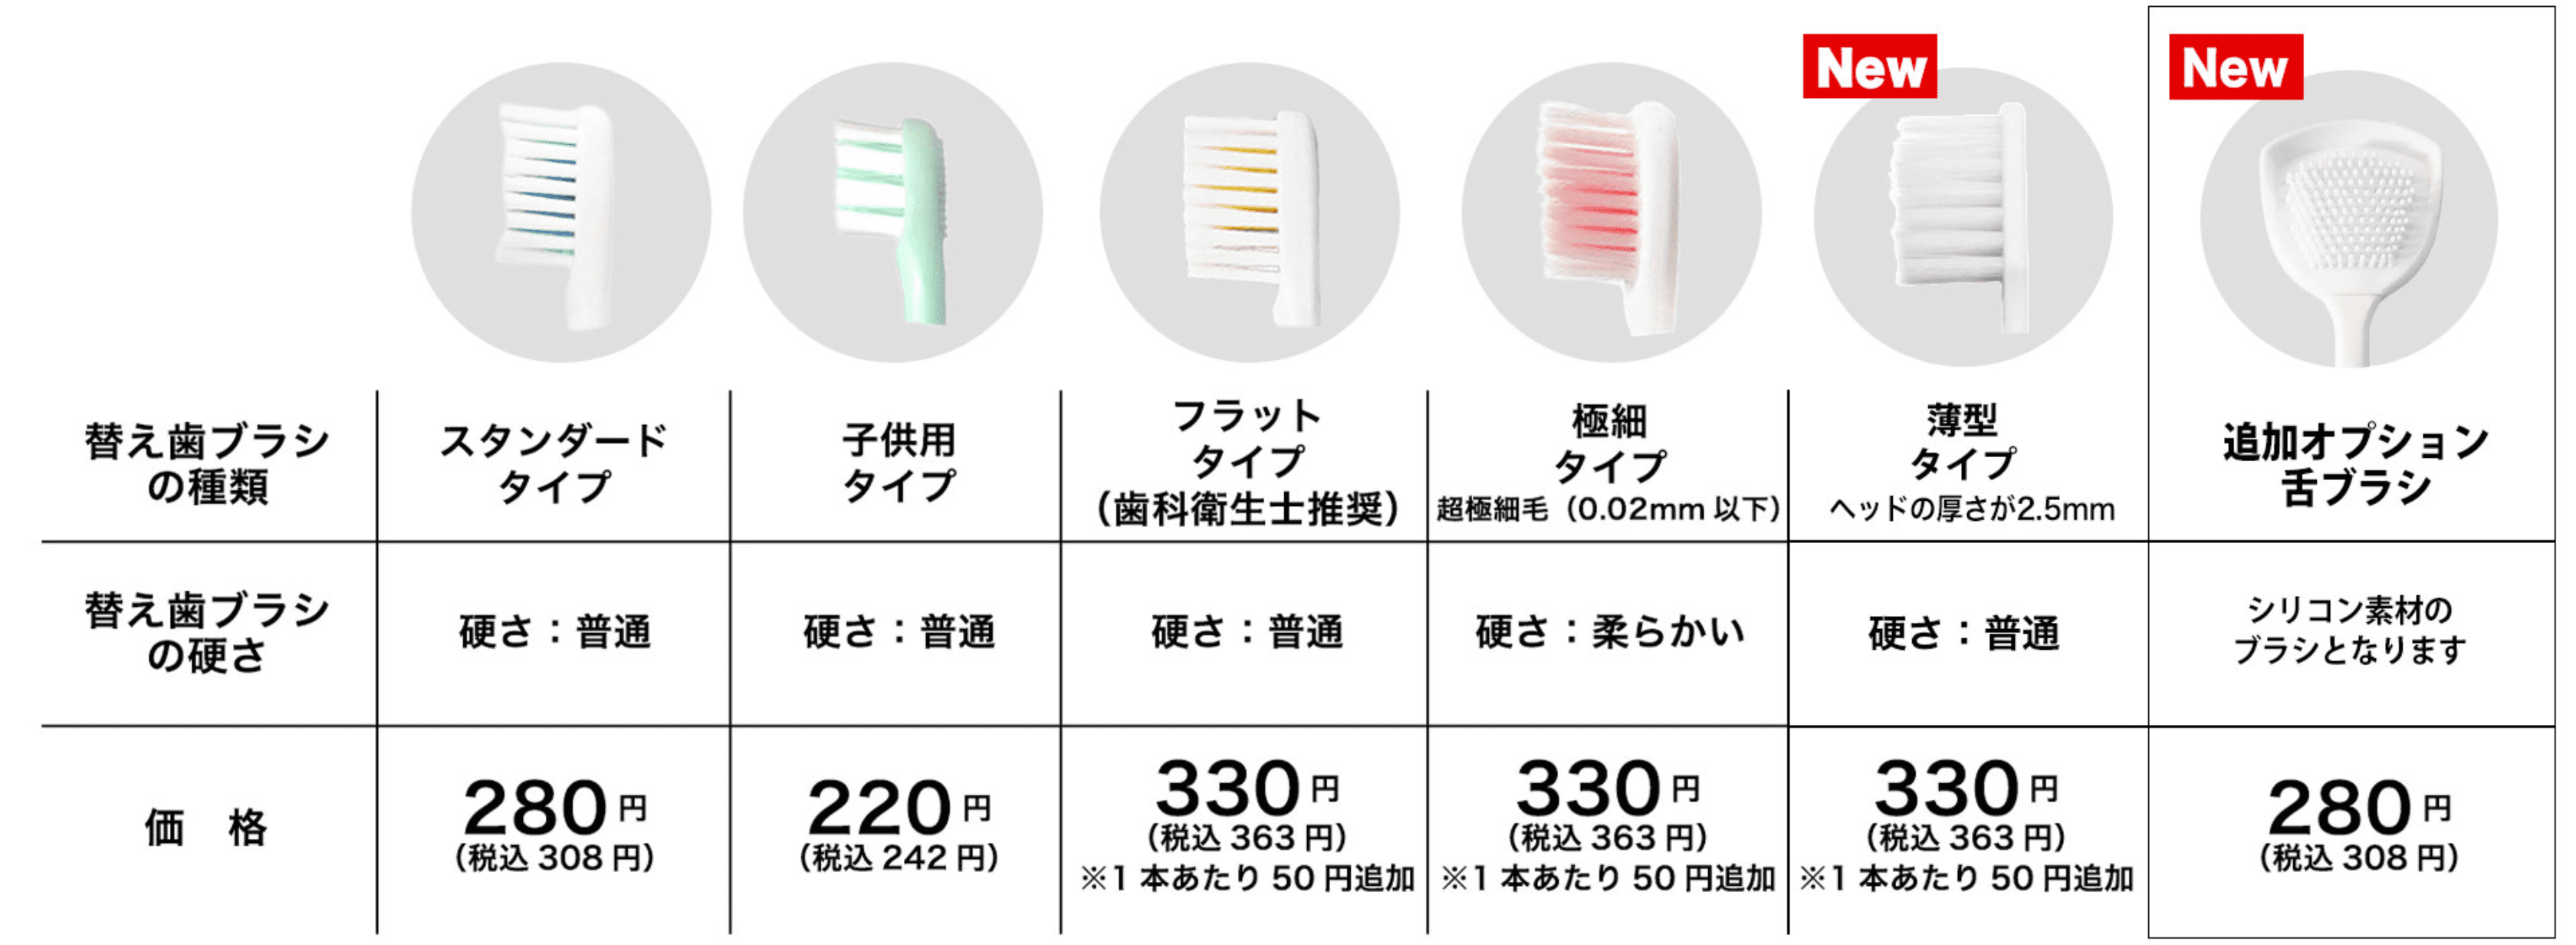 ガレイド電動歯ブラシの替え歯ブラシ別特徴と価格